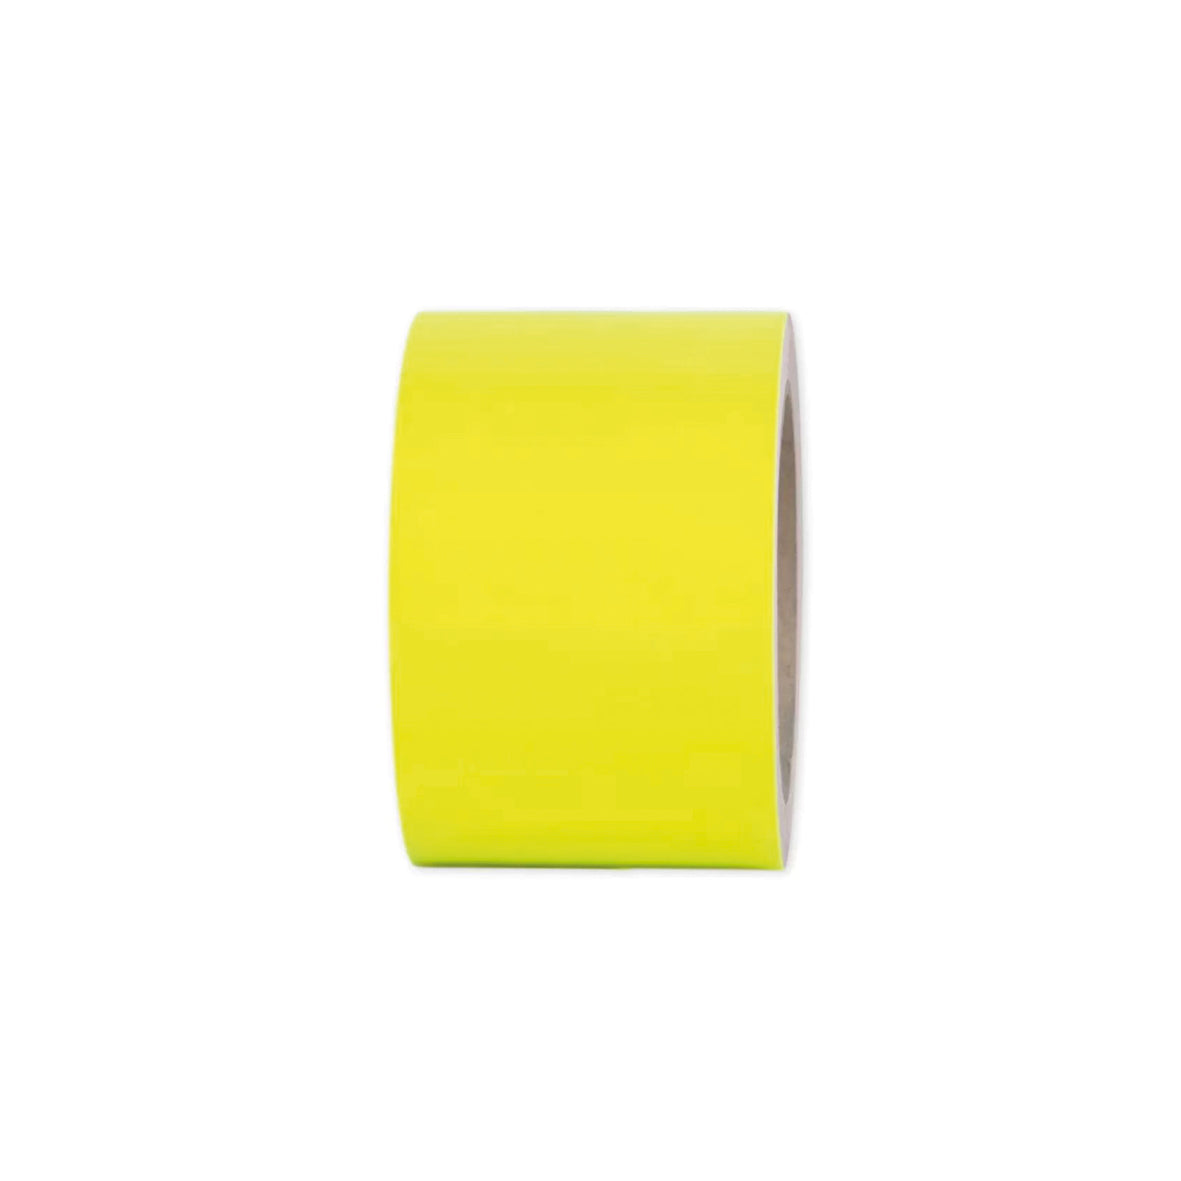 Warnmarkierungsband Fluor, gelb, 10 m, Breite 20 cm